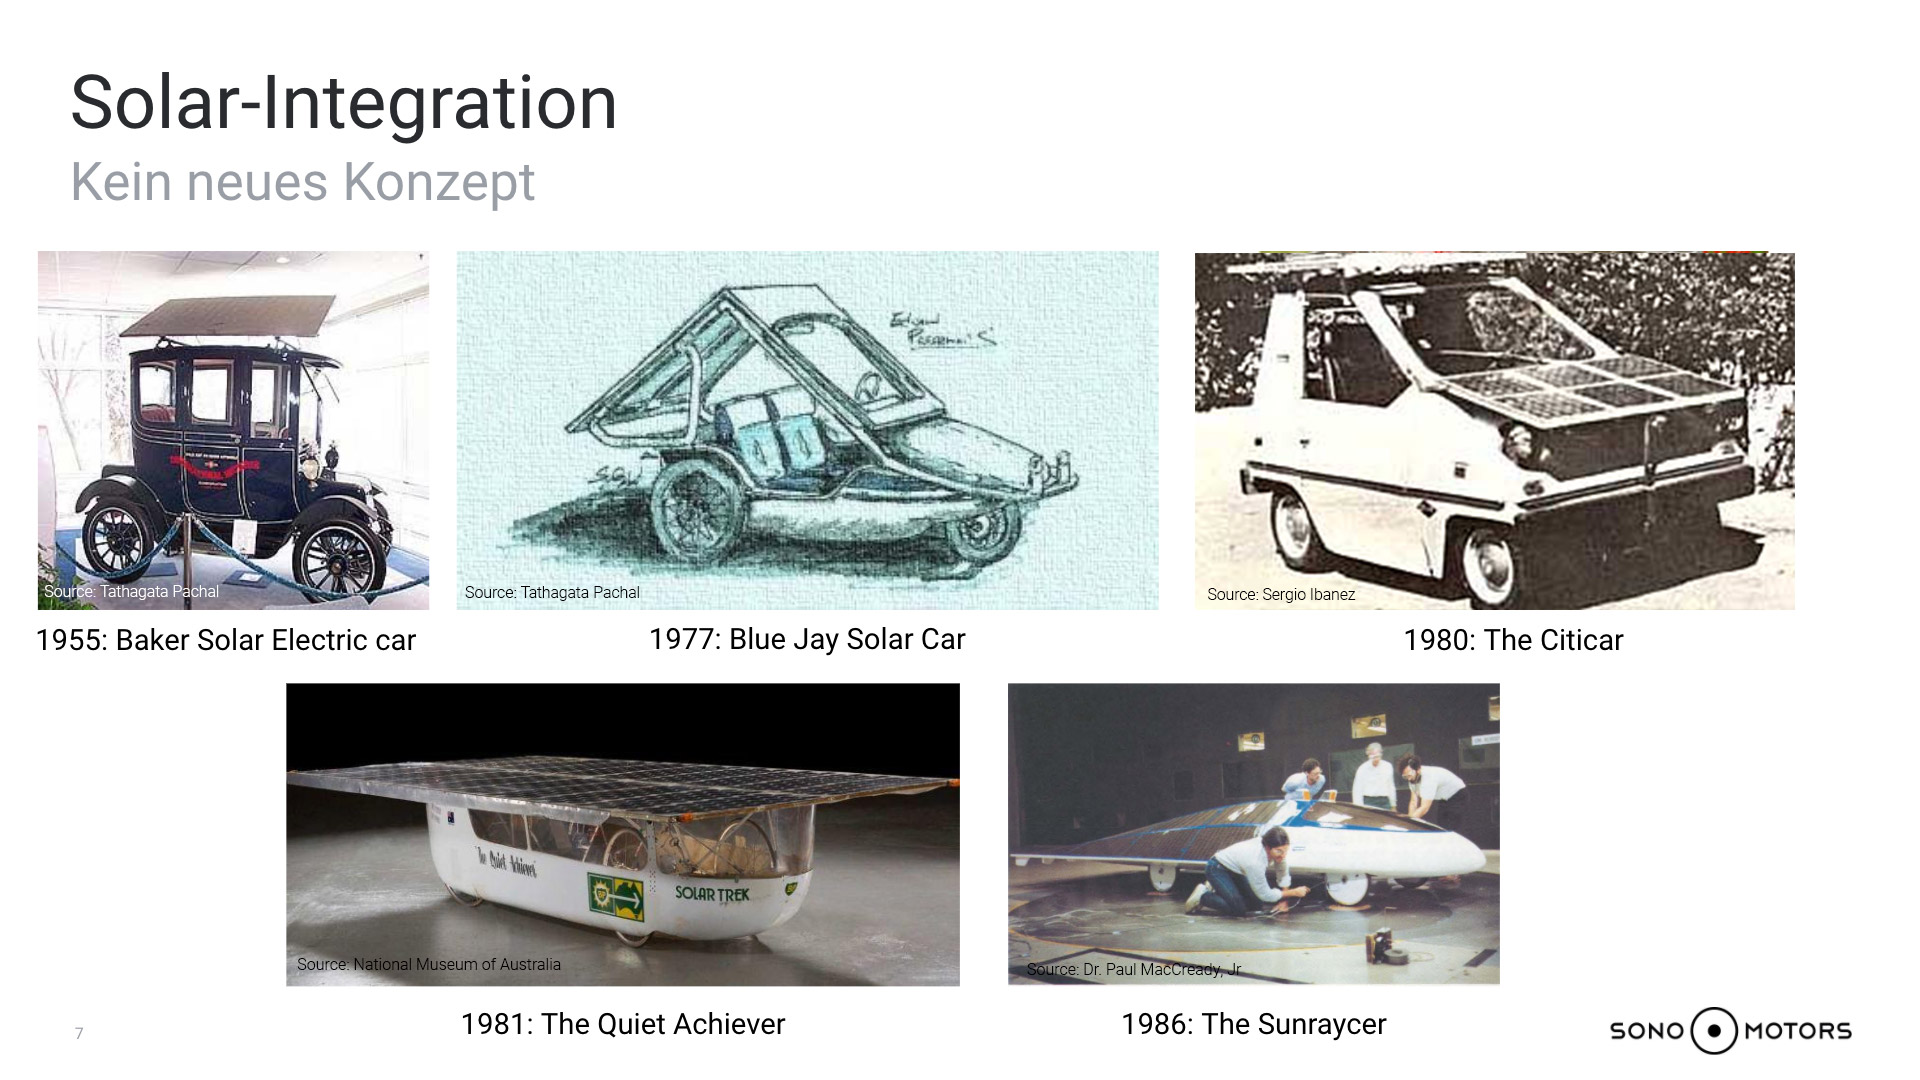 Verschieden Konzepte von Solarautos